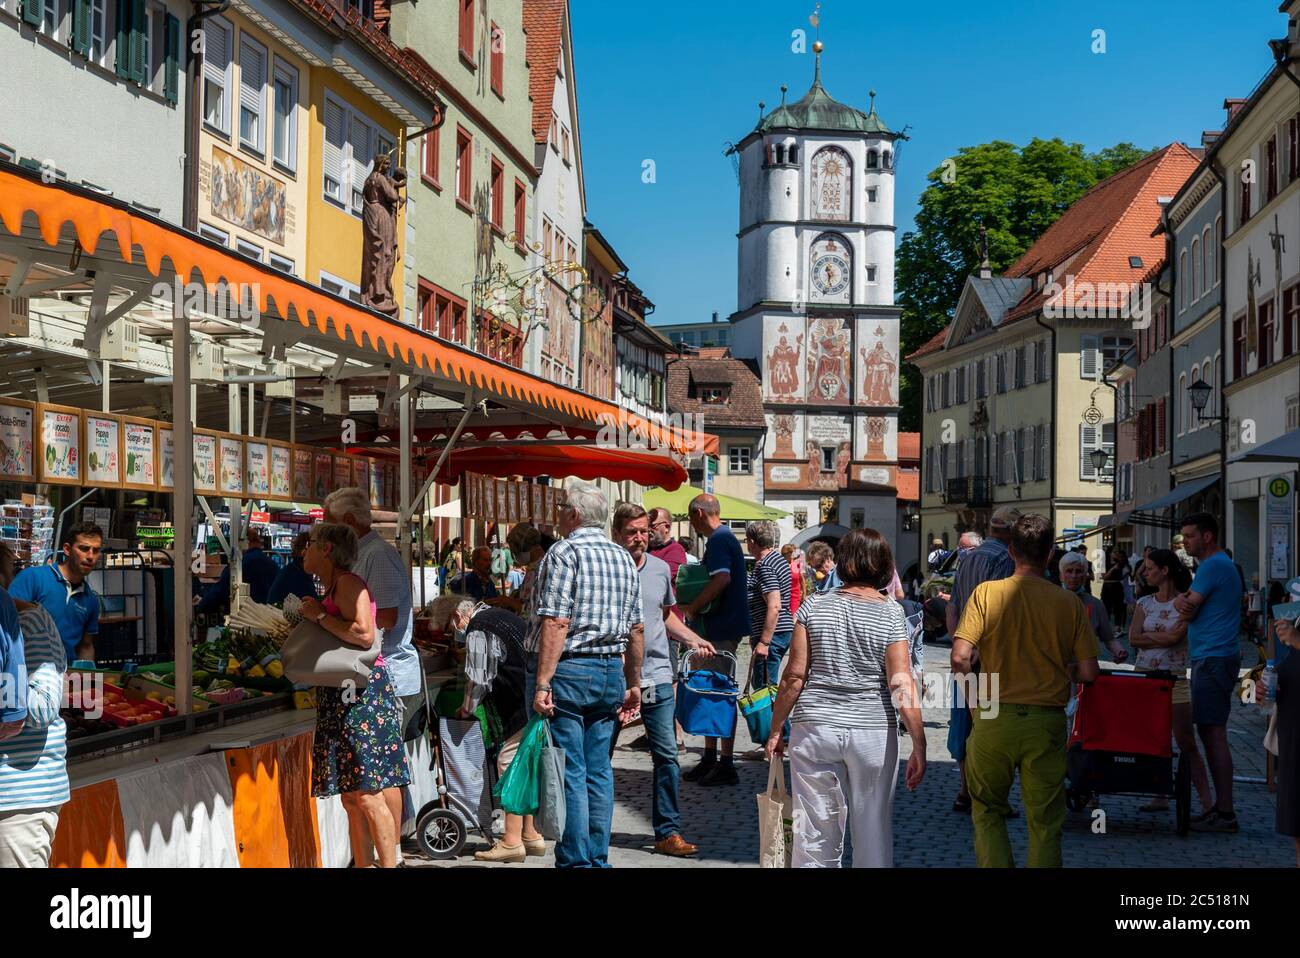 Wangen i.a., BW / Allemagne - 24 juin 2020 : vieille ville historique de Wangen im Allgau pendant le marché hebdomadaire bondé des agriculteurs Banque D'Images